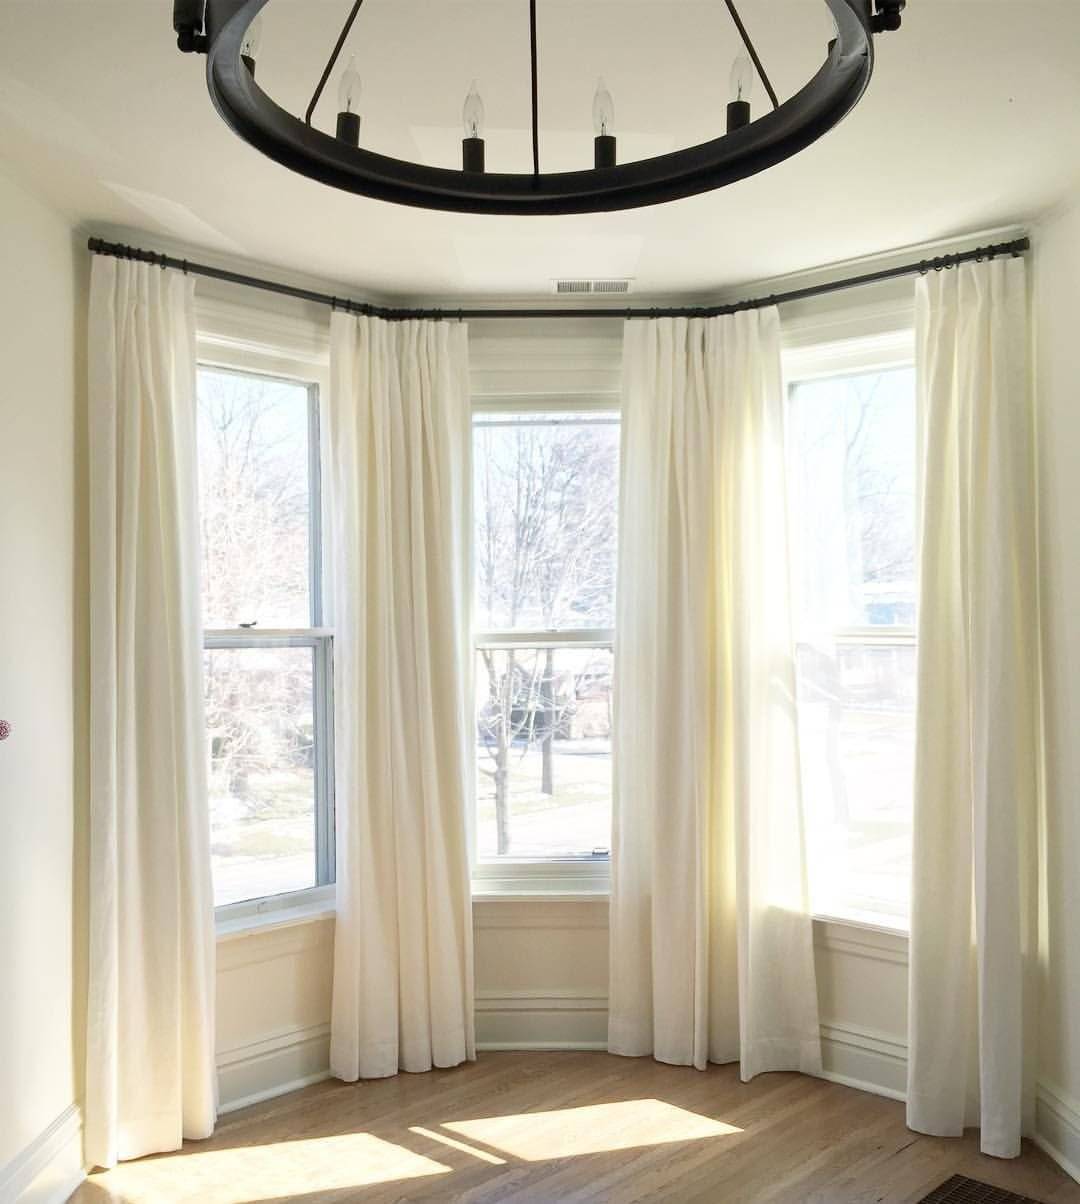 Дизайн гостиной с эркером (48 фото): оформление интерьера комнаты с эркерным окном, как обустроить гостиную площадью 35 кв. м